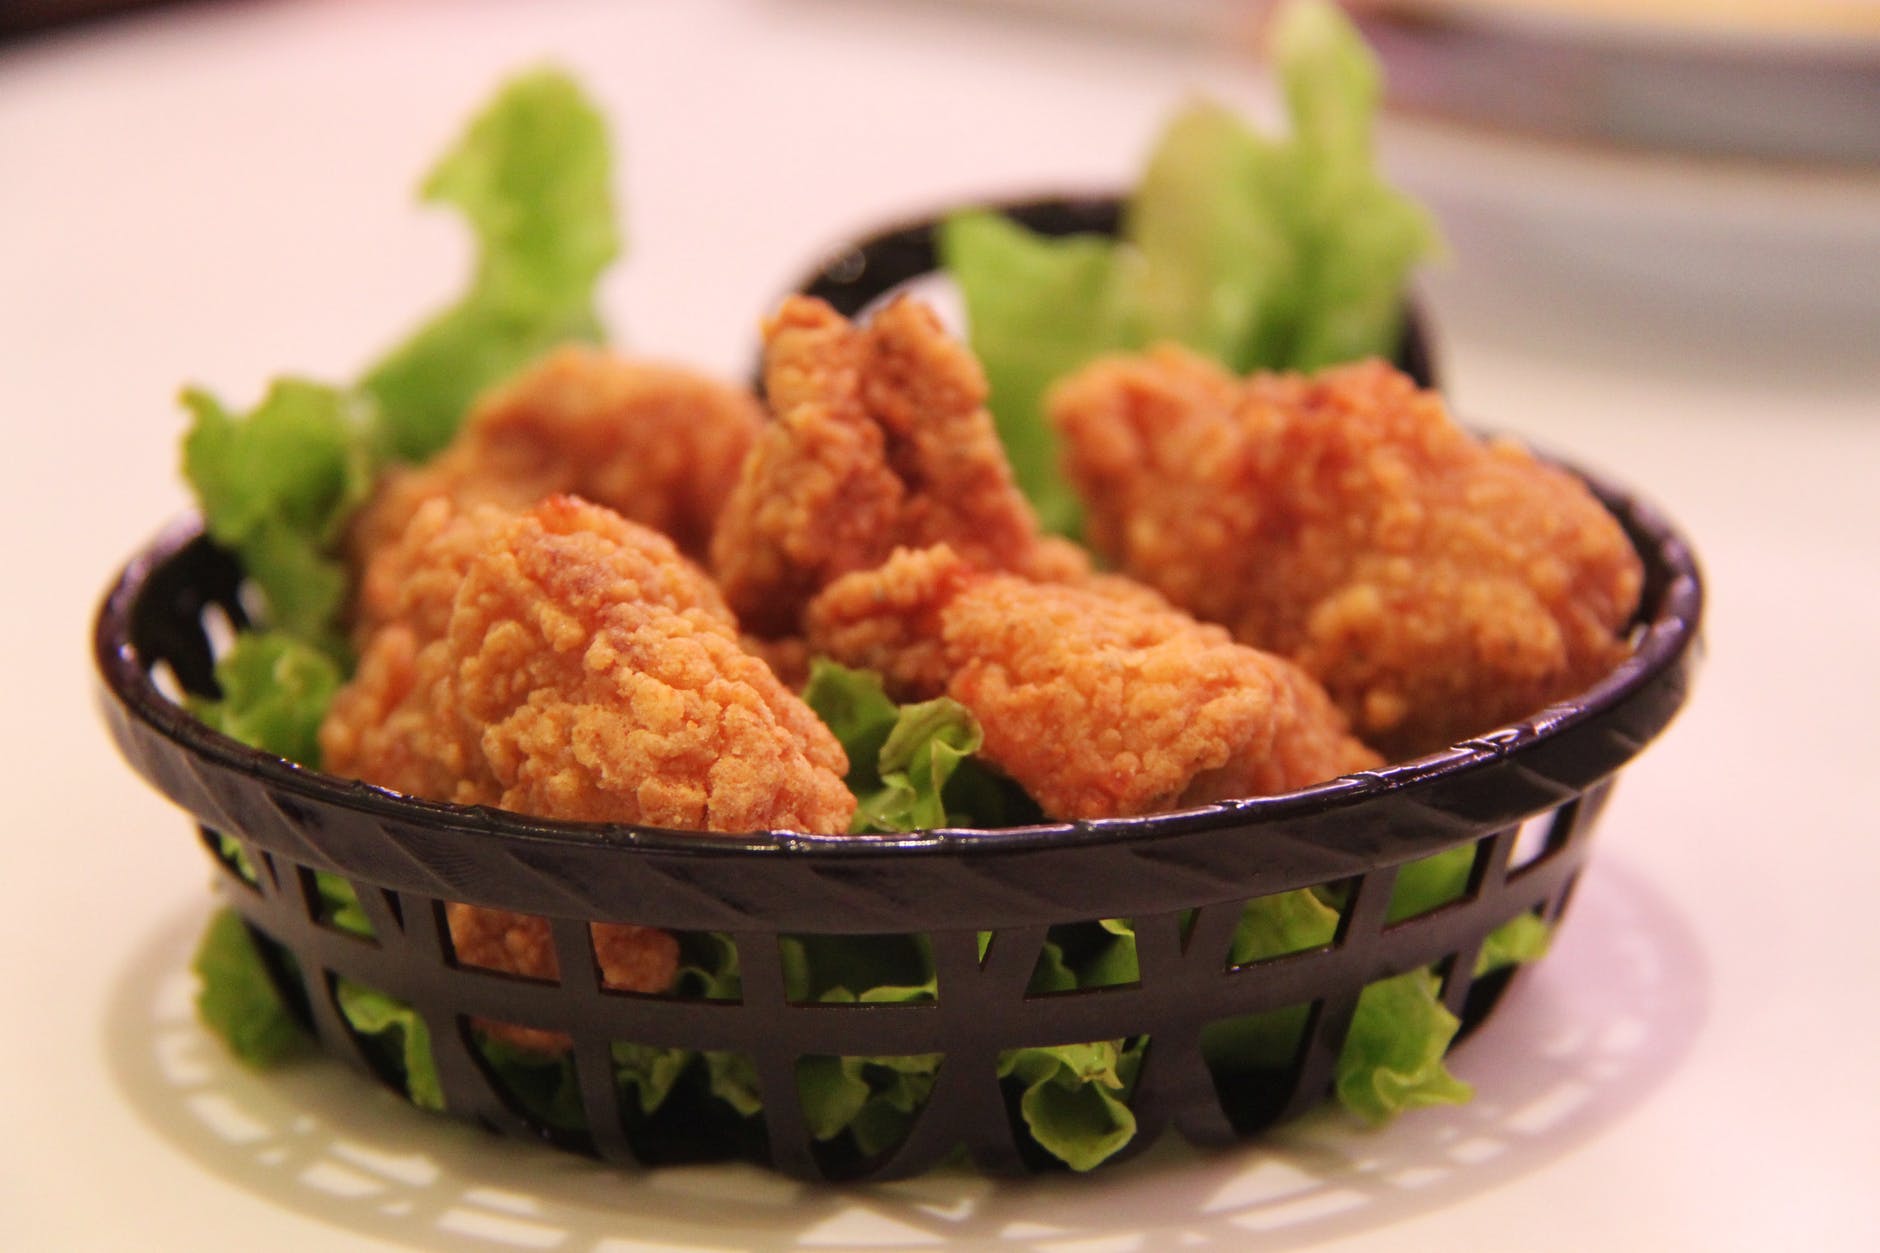 fried-chicken-chicken-fried-crunchy-60616.jpeg